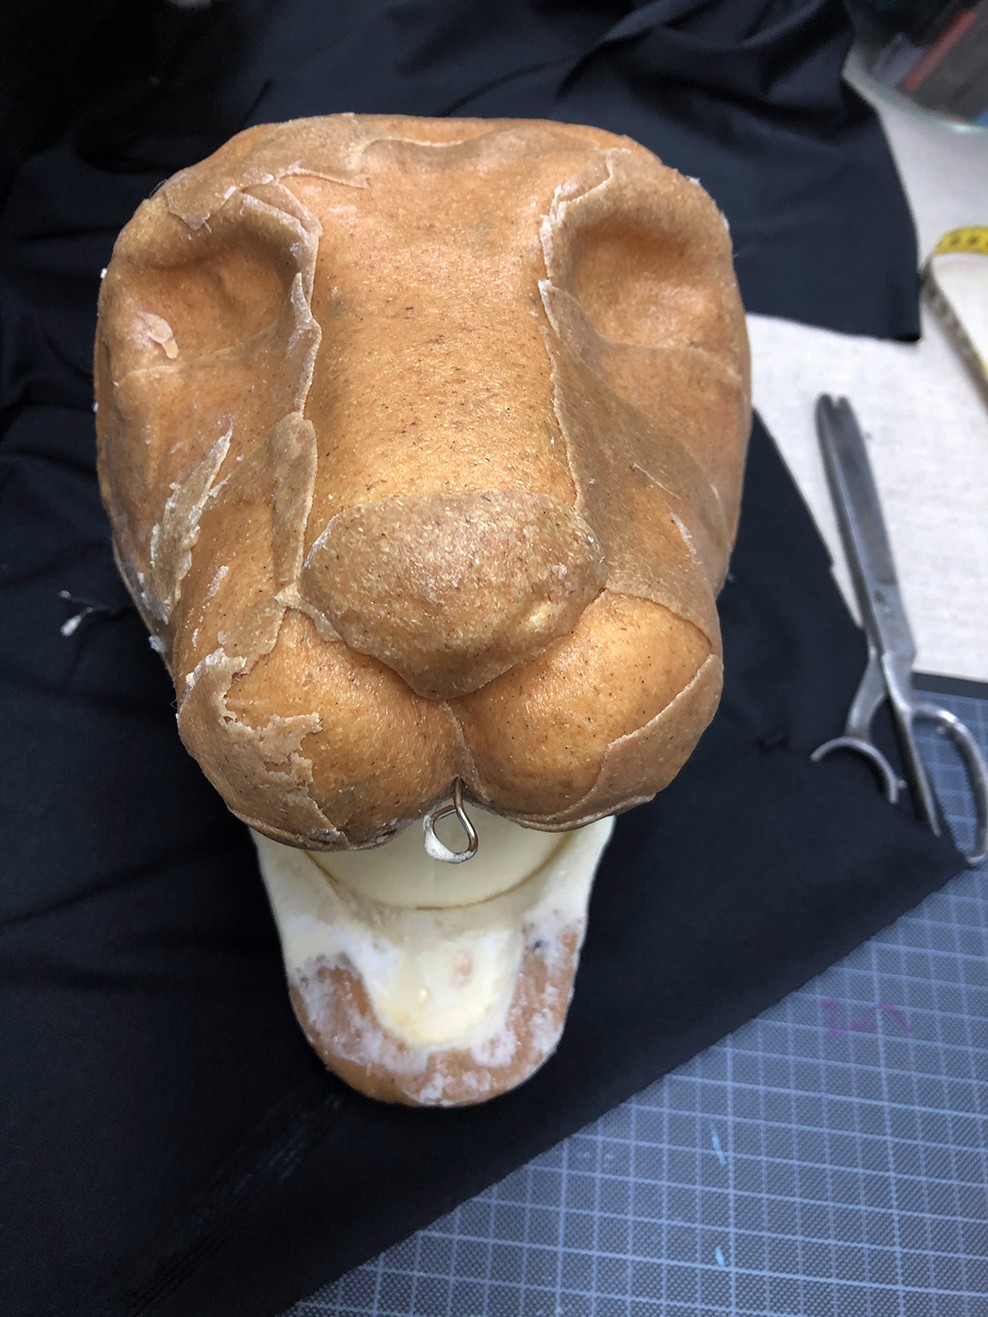 En løvehode-form med åpen munn.